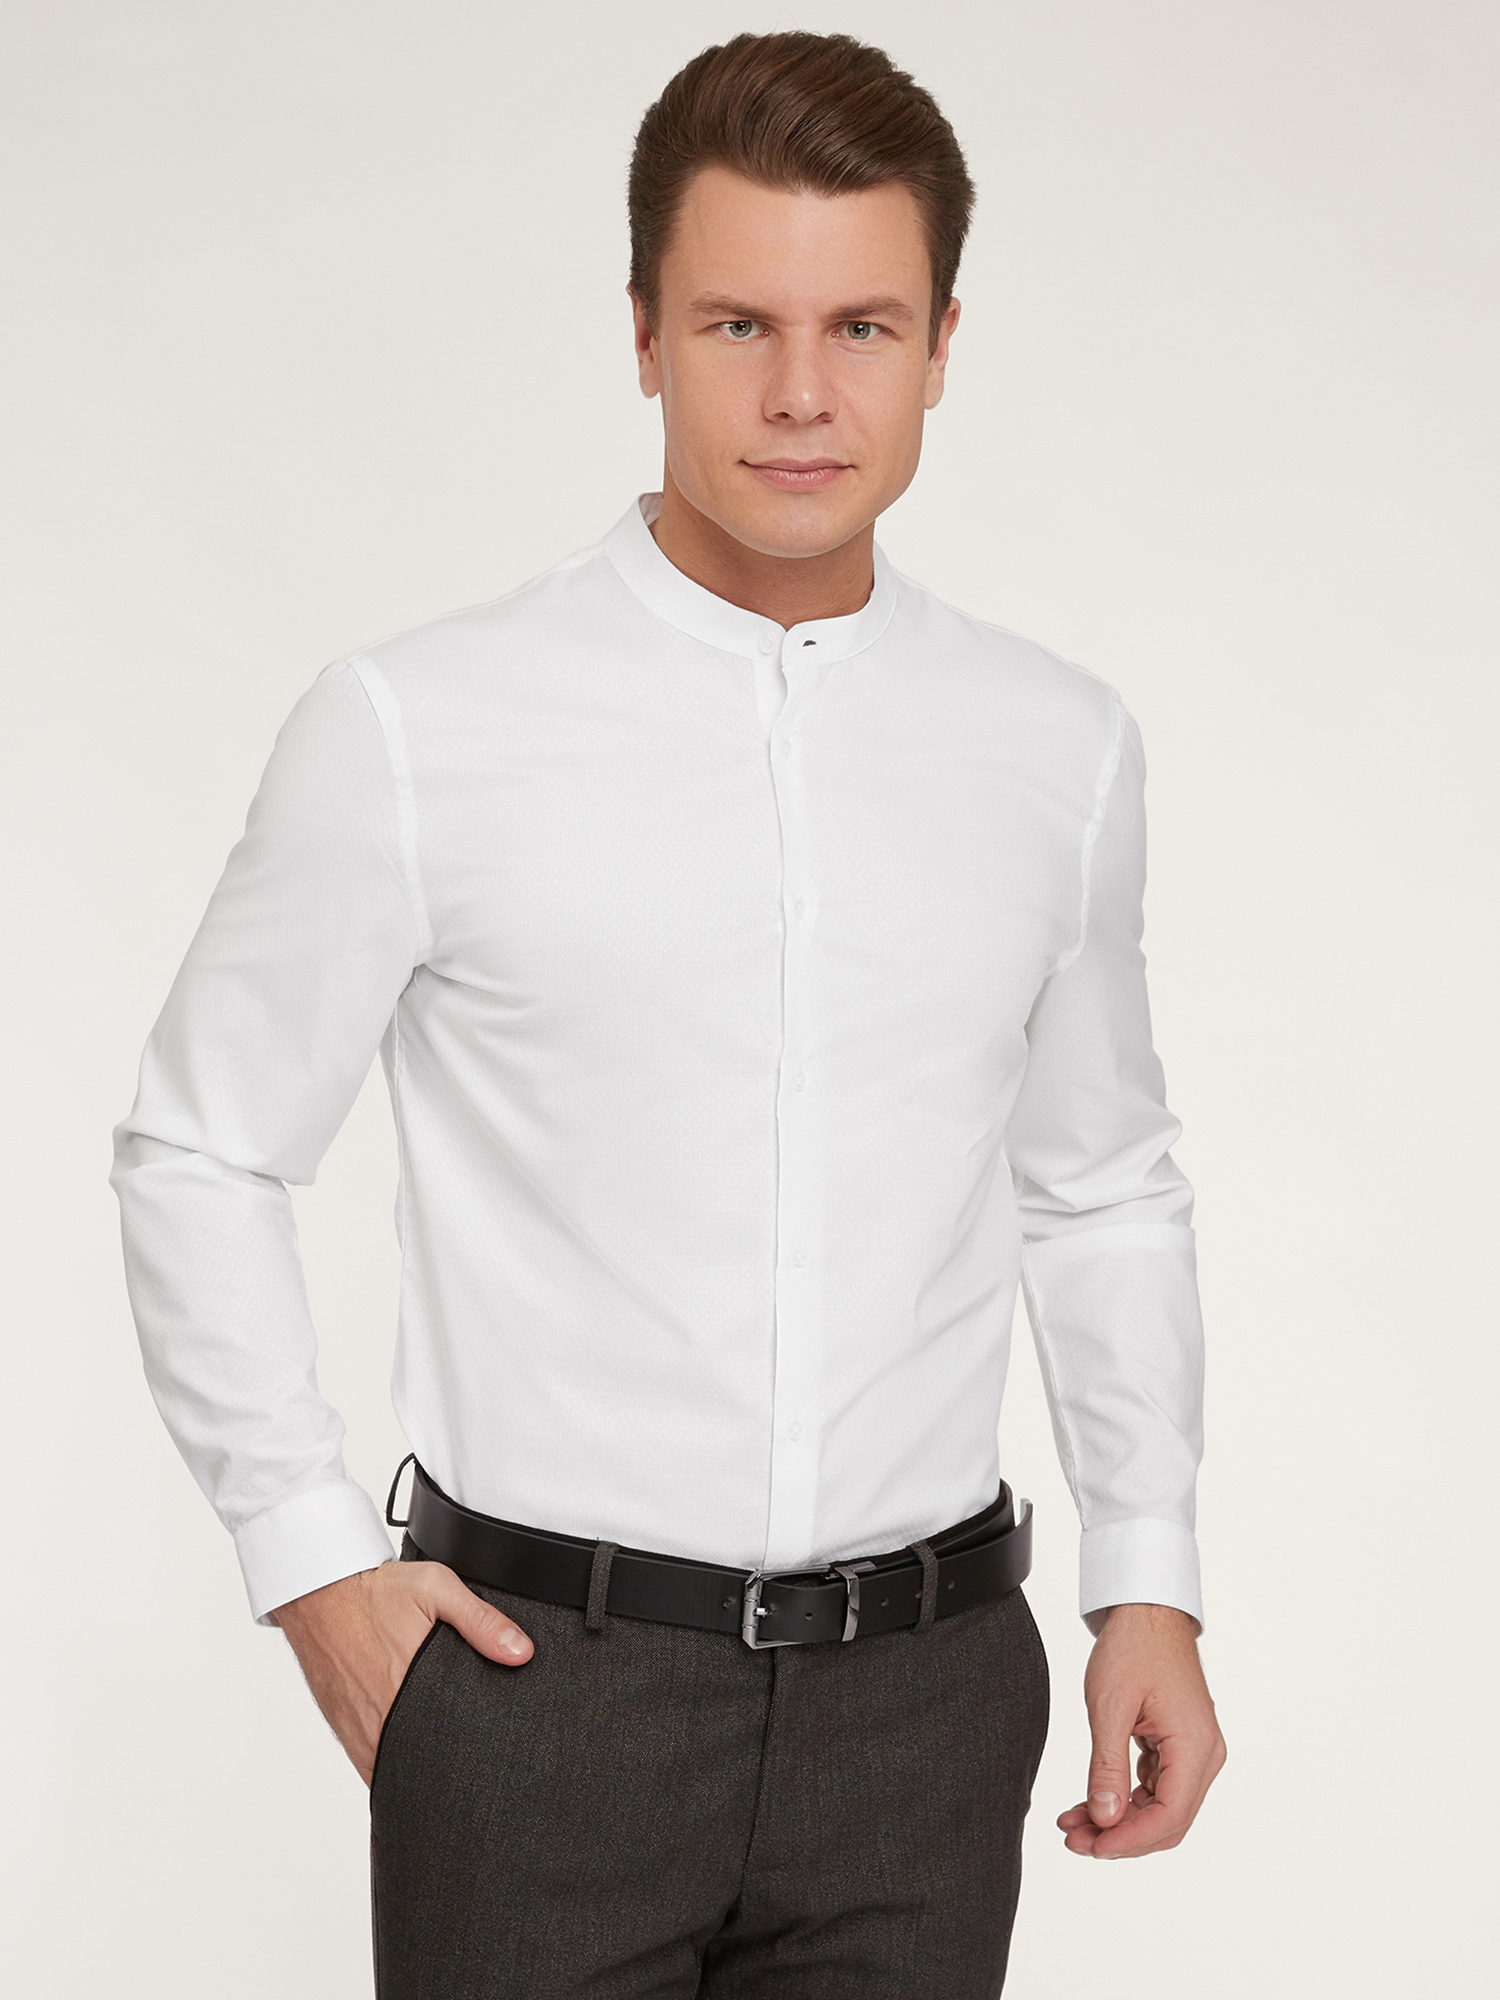 Рубашка мужская oodji 3B140004M-1 белая L